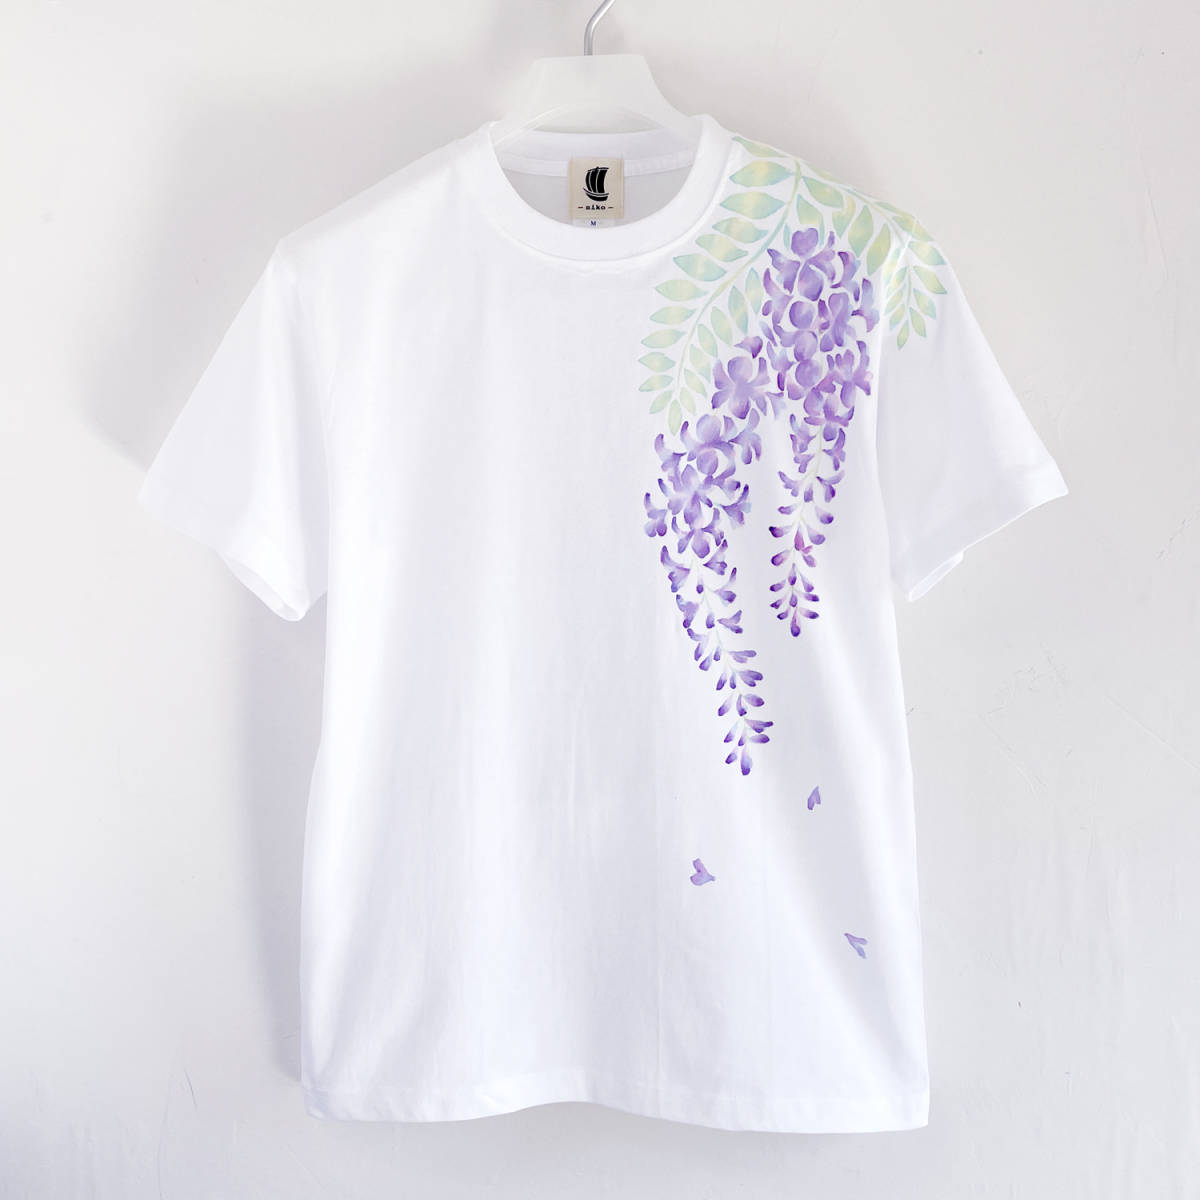 男士 T 恤, 码, 紫藤花图案T恤, 白色的, 手工制作的, 手绘T恤, 花卉图案, 小尺寸, 圆领, 图案